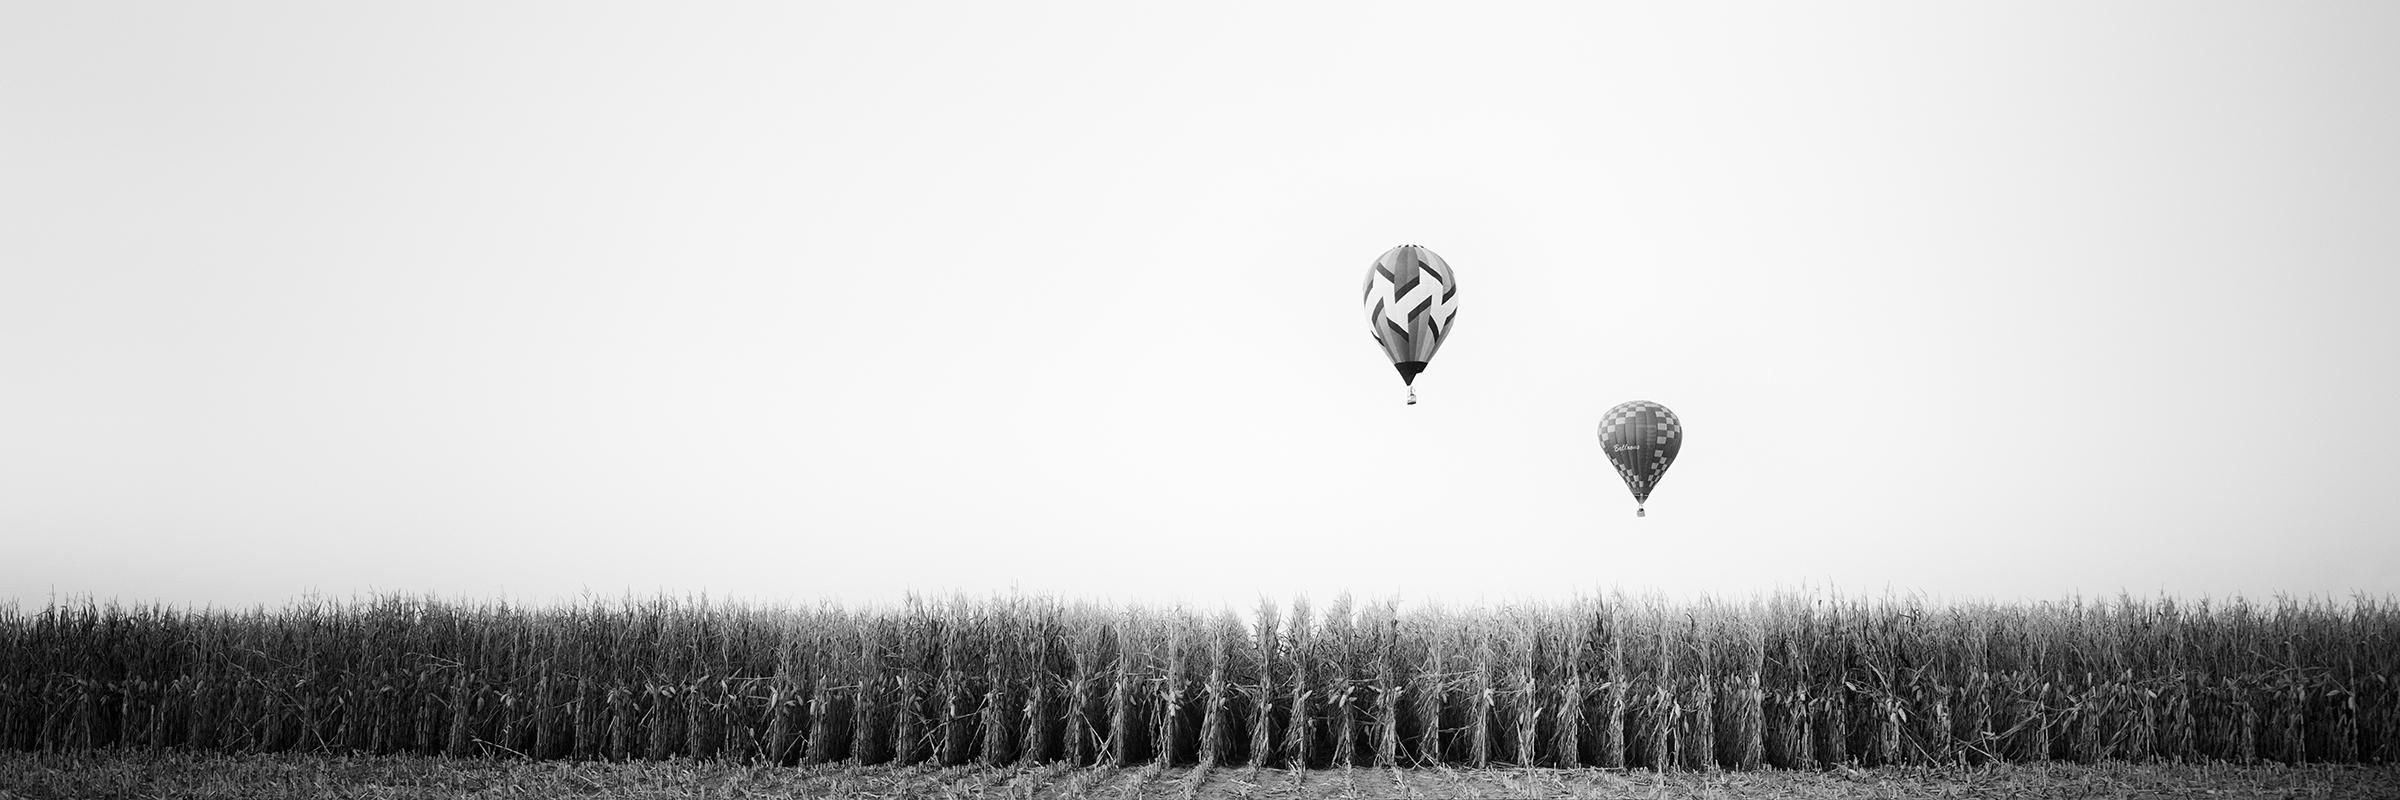 Gerald Berghammer Landscape Photograph – Hot Air Ballon Panorama, Cornfield, Schwarz-Weiß, Kunstlandschaft, Fotografie